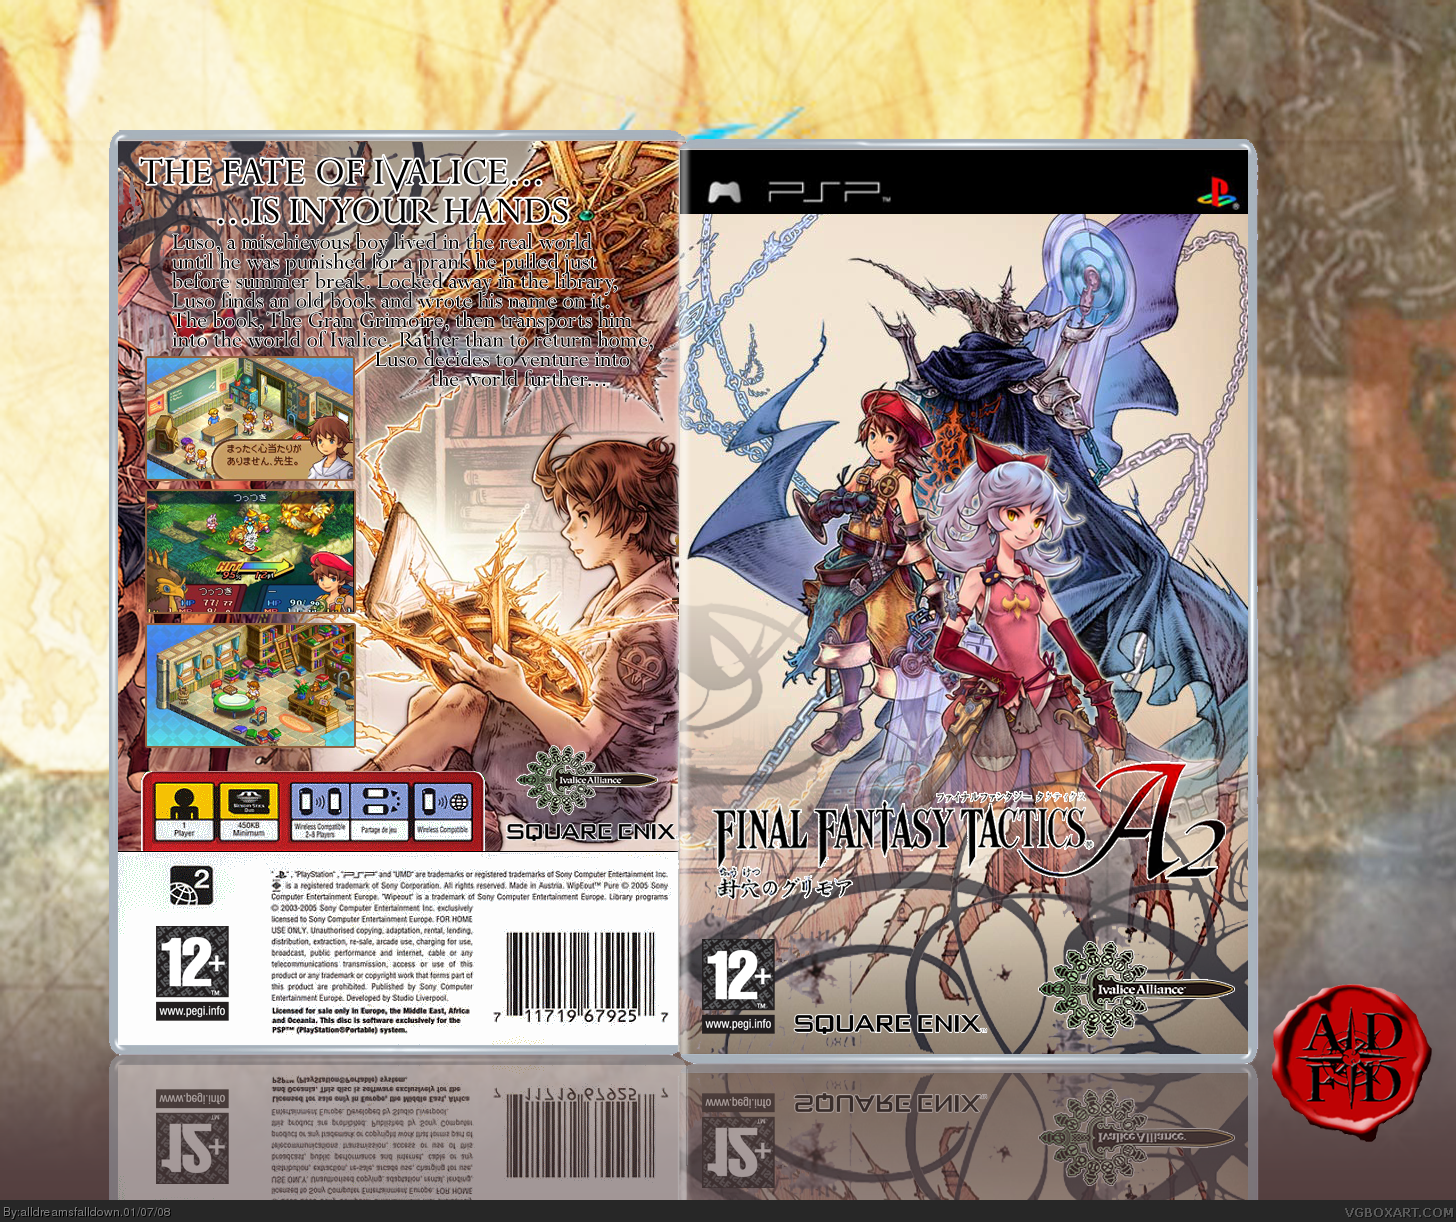 Final Fantasy Tactics A2 box cover